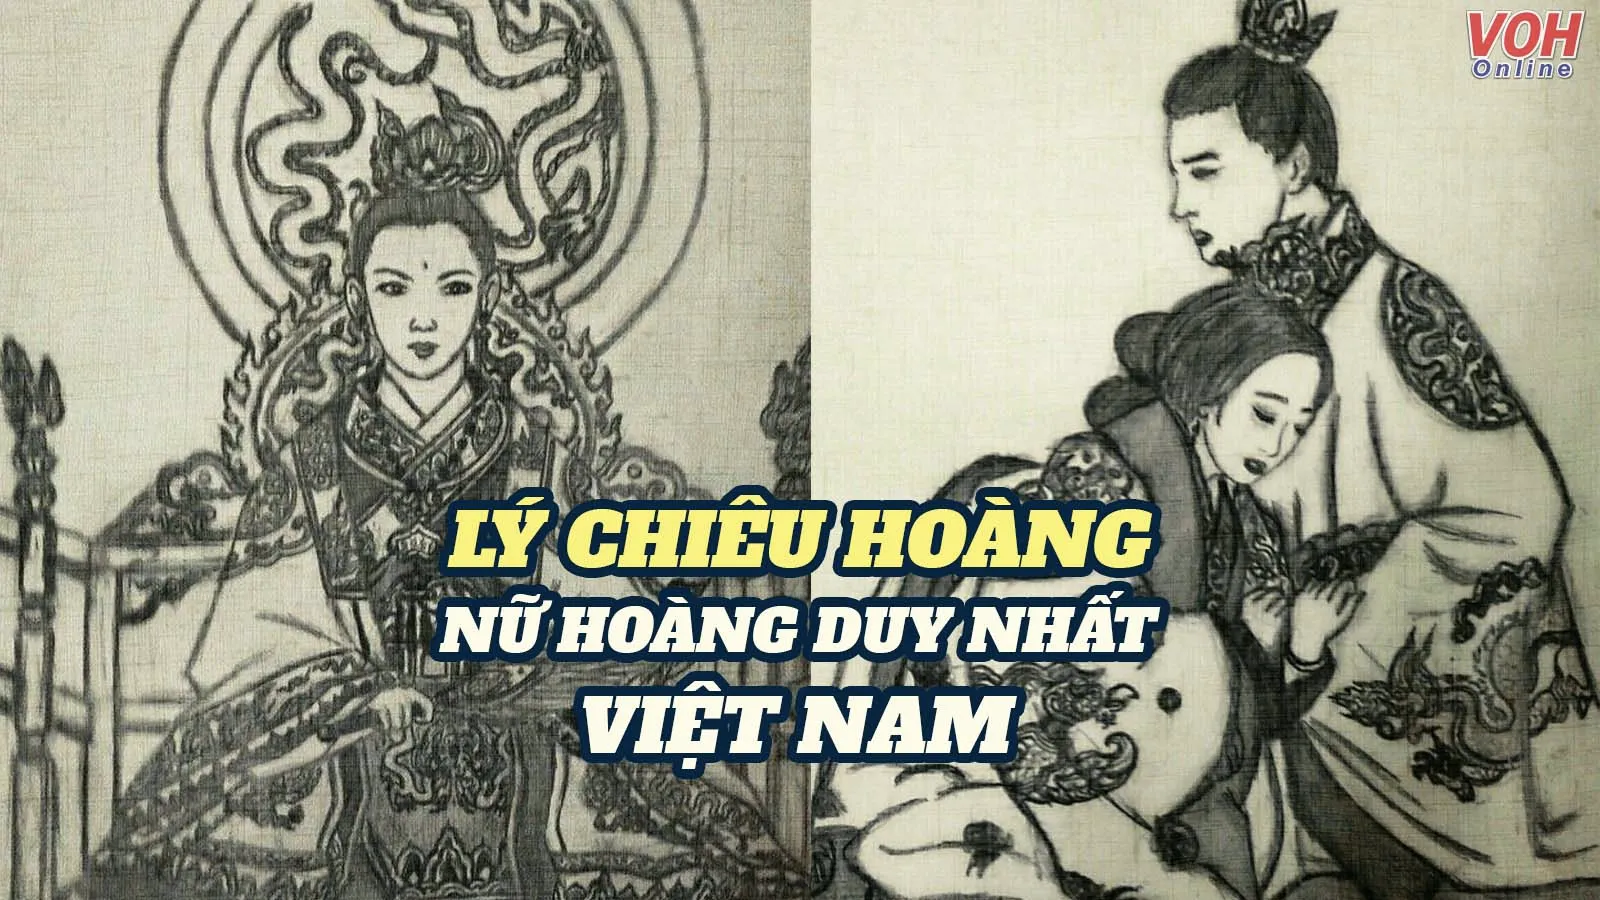 Lý Chiêu Hoàng - Nữ hoàng duy nhất lịch sử Việt Nam, cuộc đời lạ lùng, đầy sóng gió!